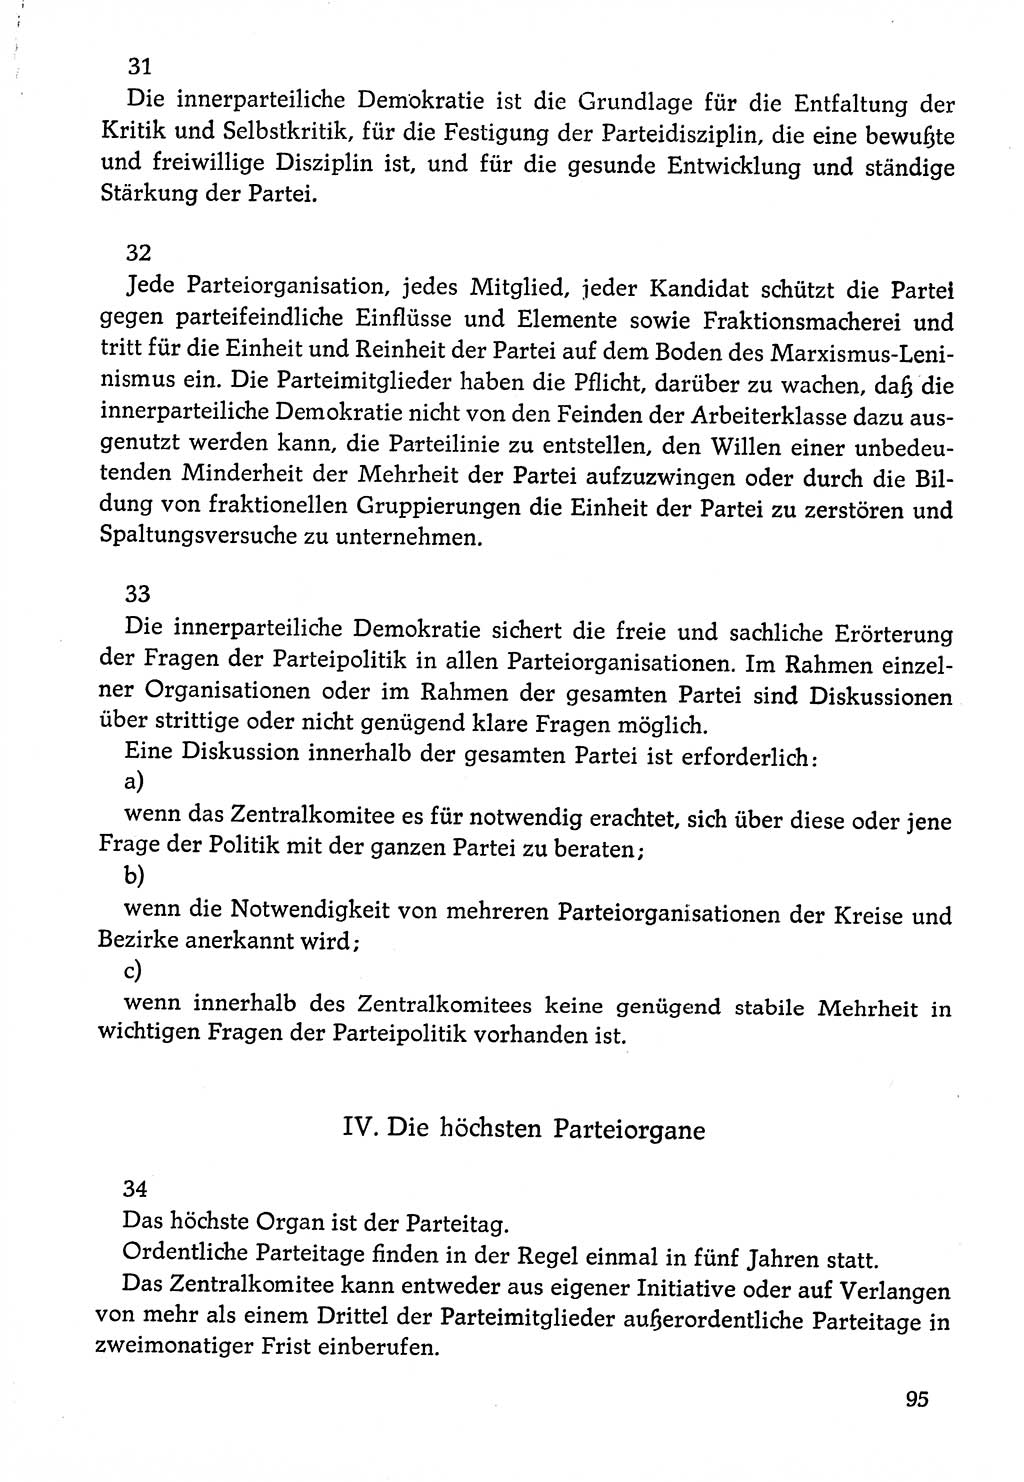 Dokumente der Sozialistischen Einheitspartei Deutschlands (SED) [Deutsche Demokratische Republik (DDR)] 1976-1977, Seite 95 (Dok. SED DDR 1976-1977, S. 95)